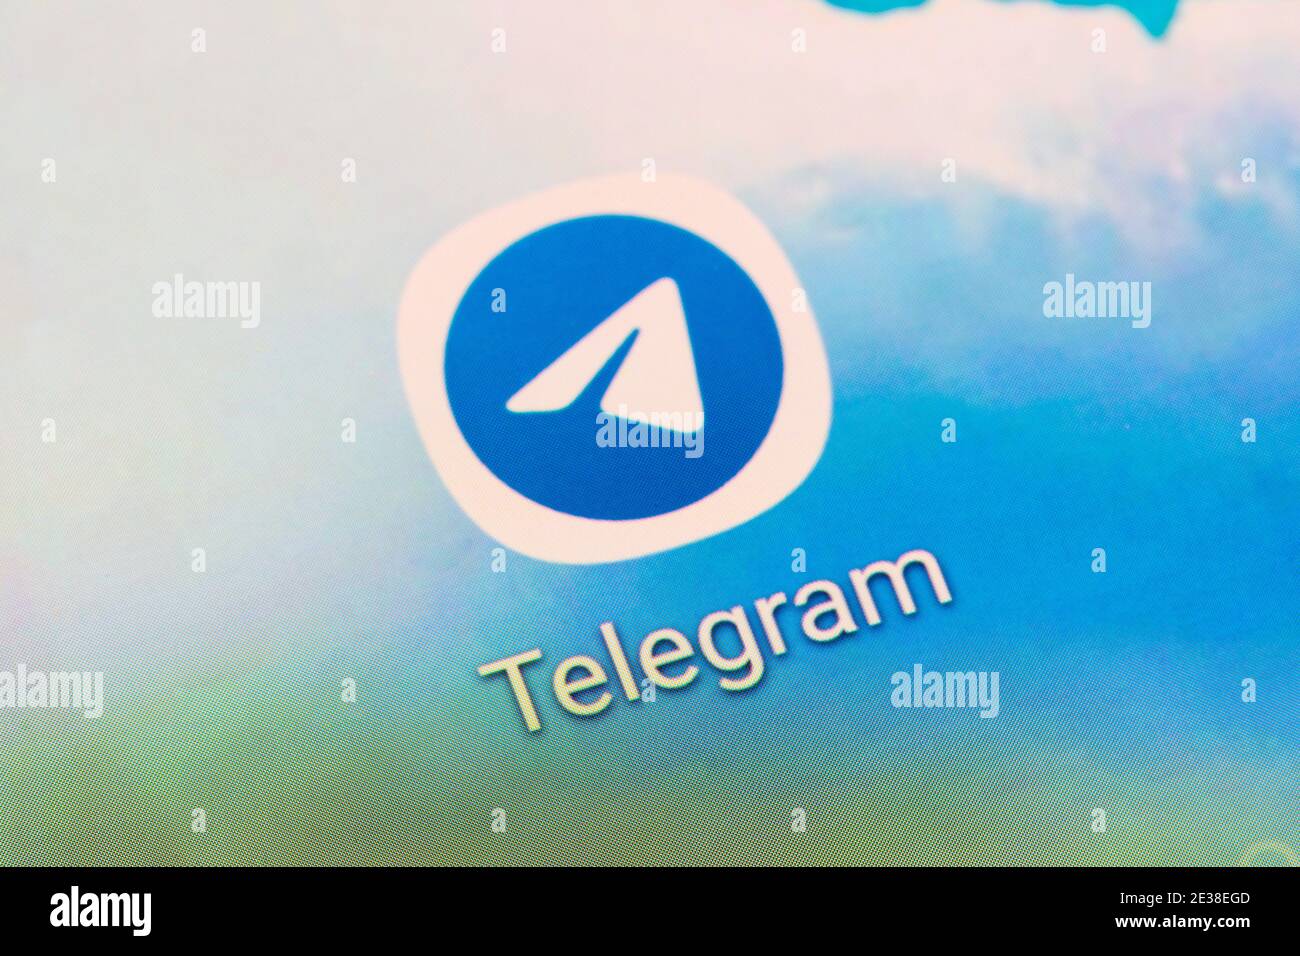 Una presentazione dell'app Telegram, un software di messaggistica istantanea e un servizio applicativo gratuiti, multipiattaforma e basato su cloud, sullo schermo di uno smartphone Foto Stock